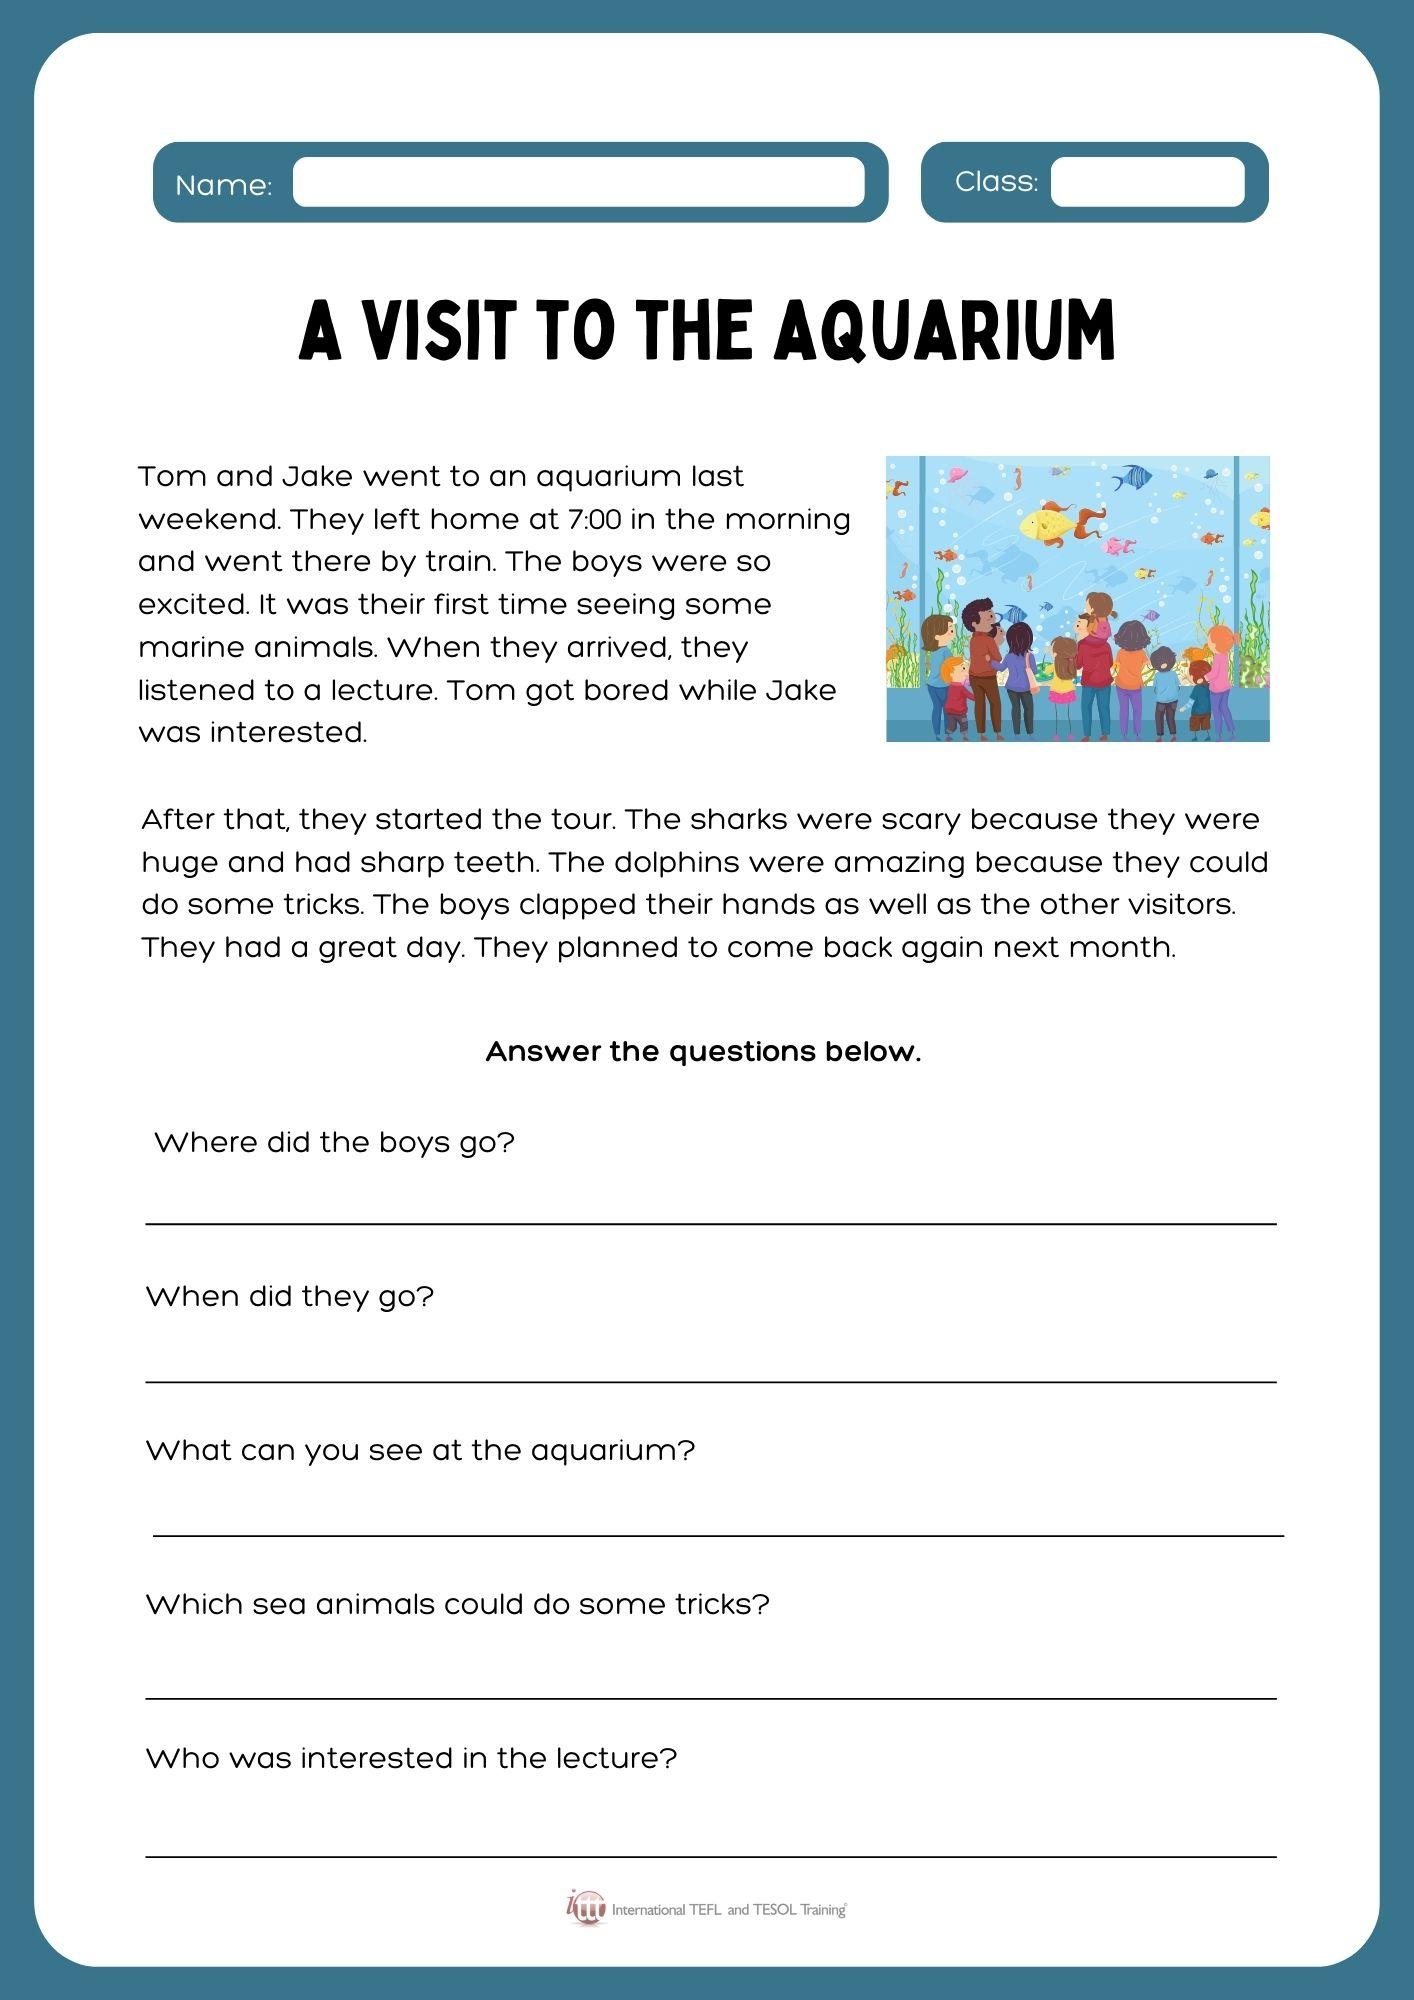 Grammar corner A Visit to the Aquarium - Reading Comprehension